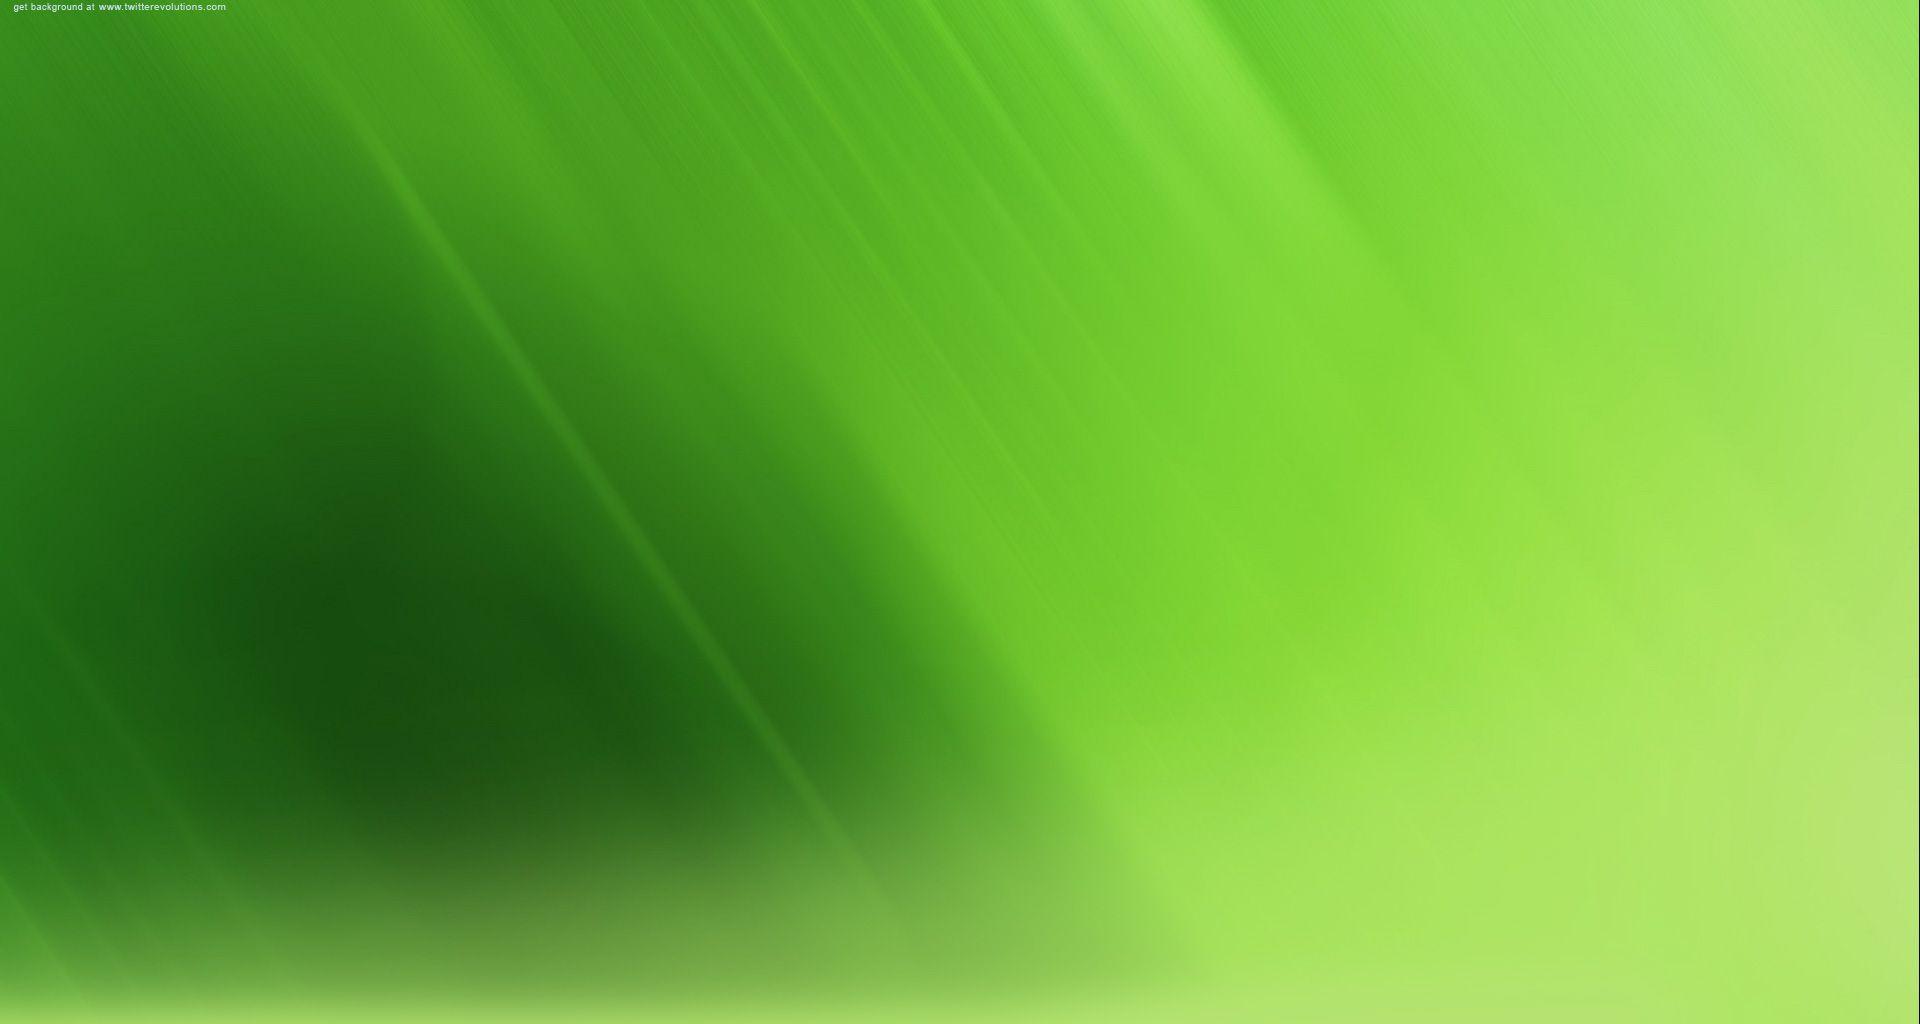 green background image for websites